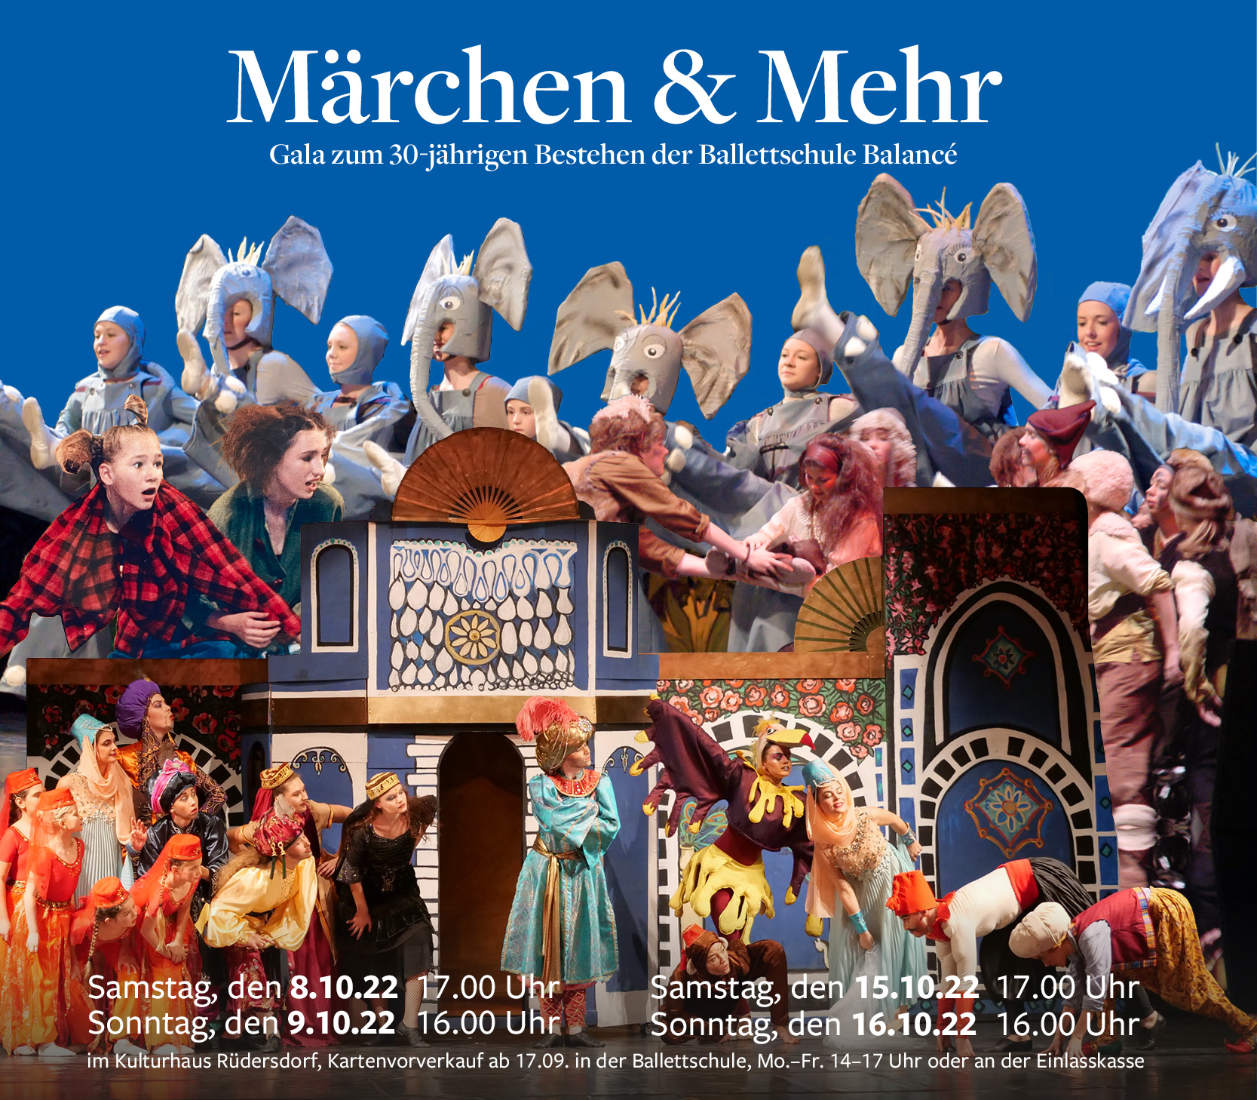 2209 Ballettschule MaerchenMehr